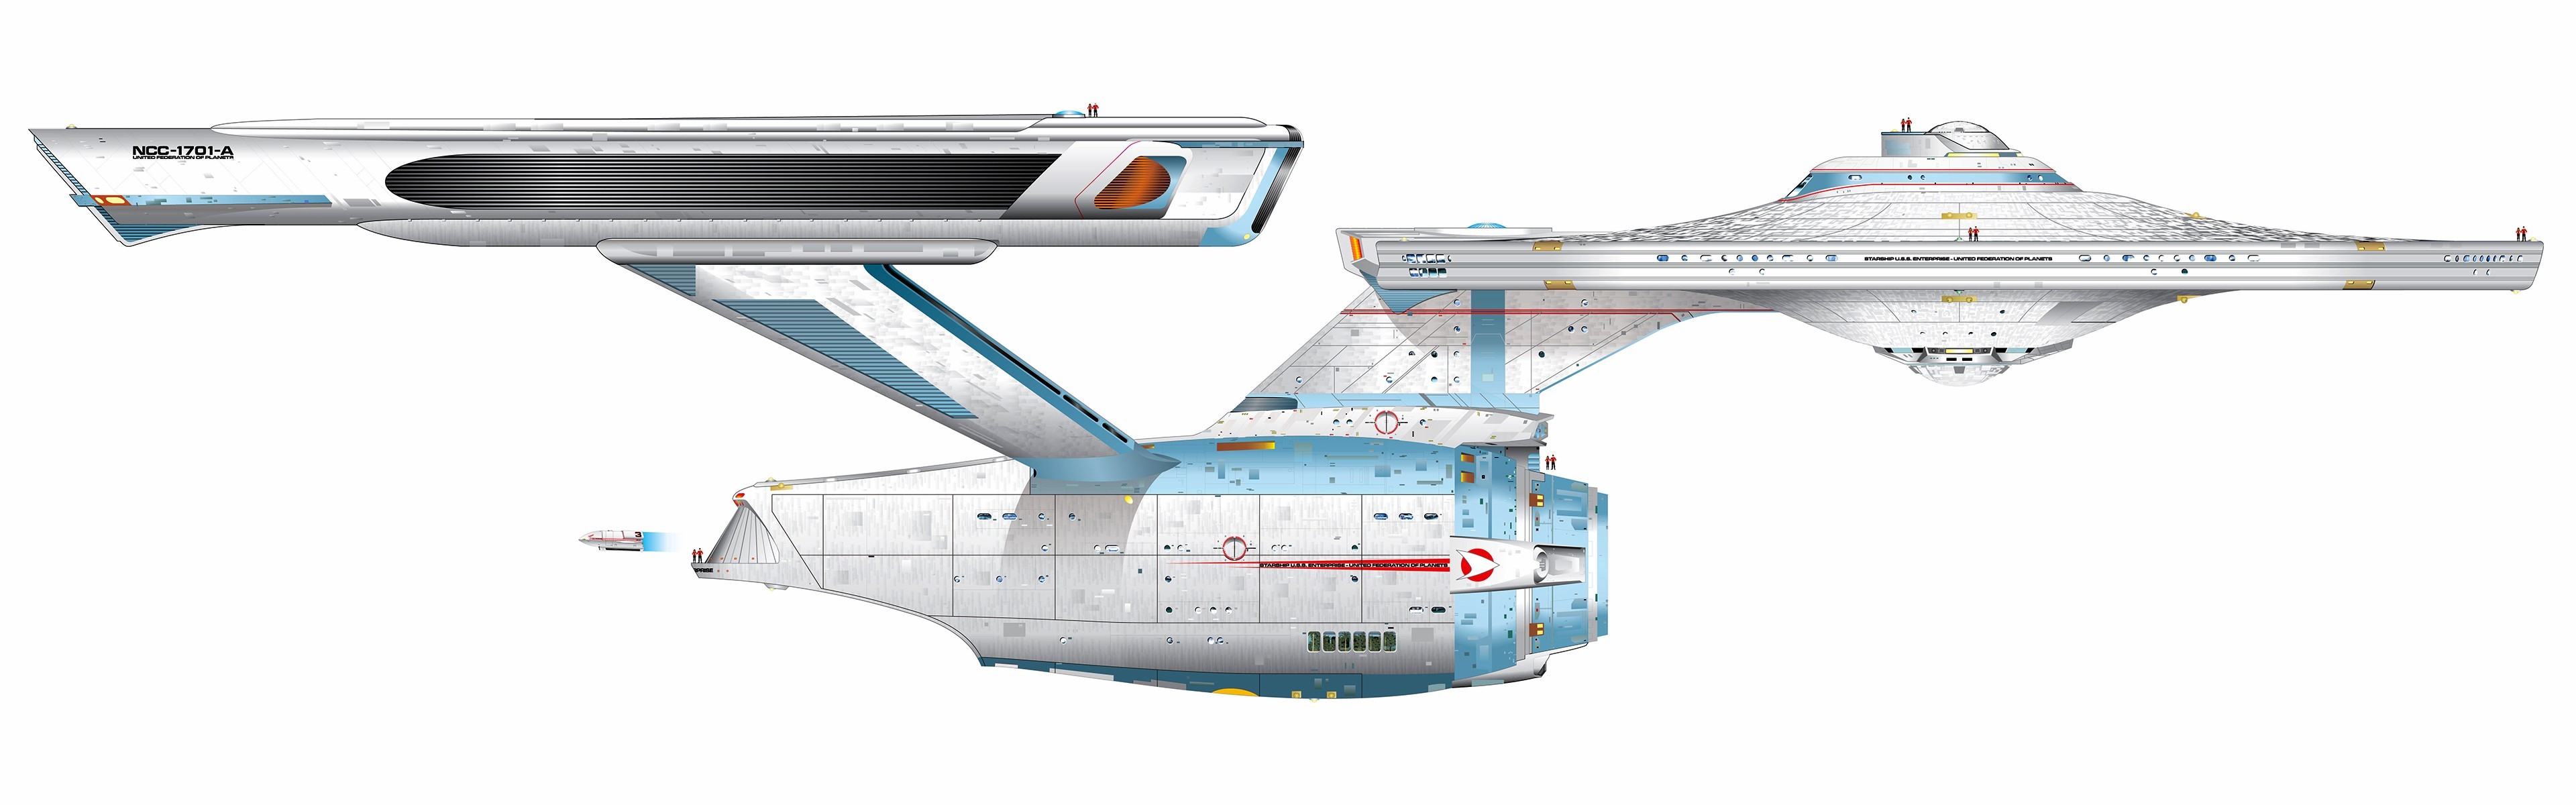 3840x1200 General  Star Trek USS Enterprise (spaceship) multiple display  simple background dual monitors